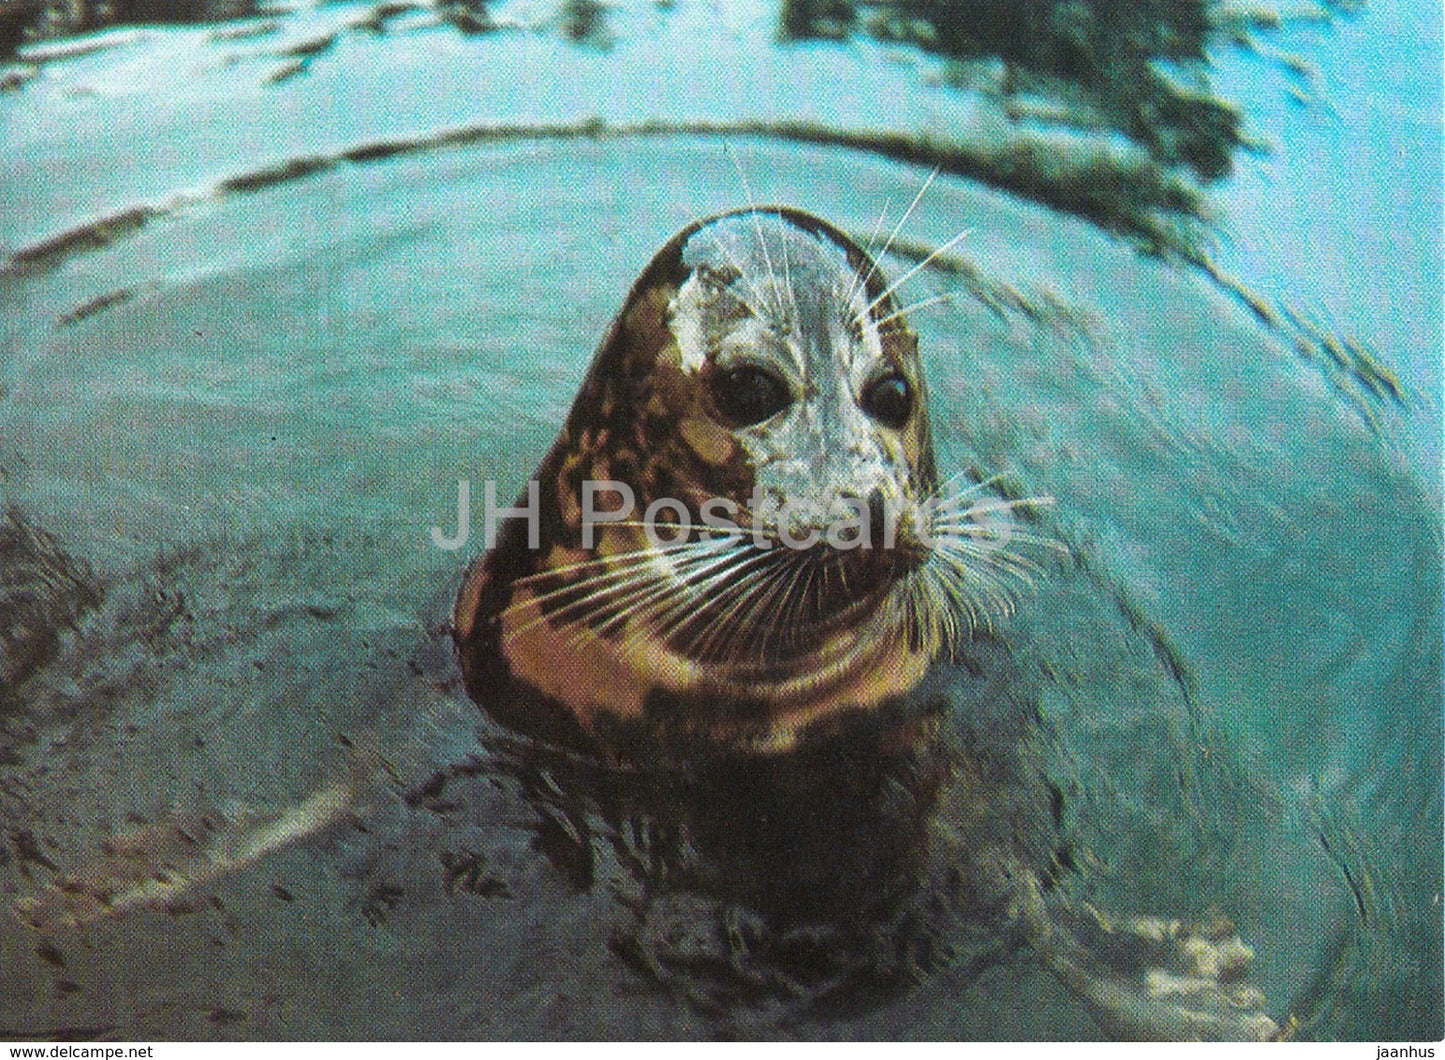 Caspian seal - Pusa caspica - Oceanarium in Batumi - 1989 - Georgia USSR - unused - JH Postcards